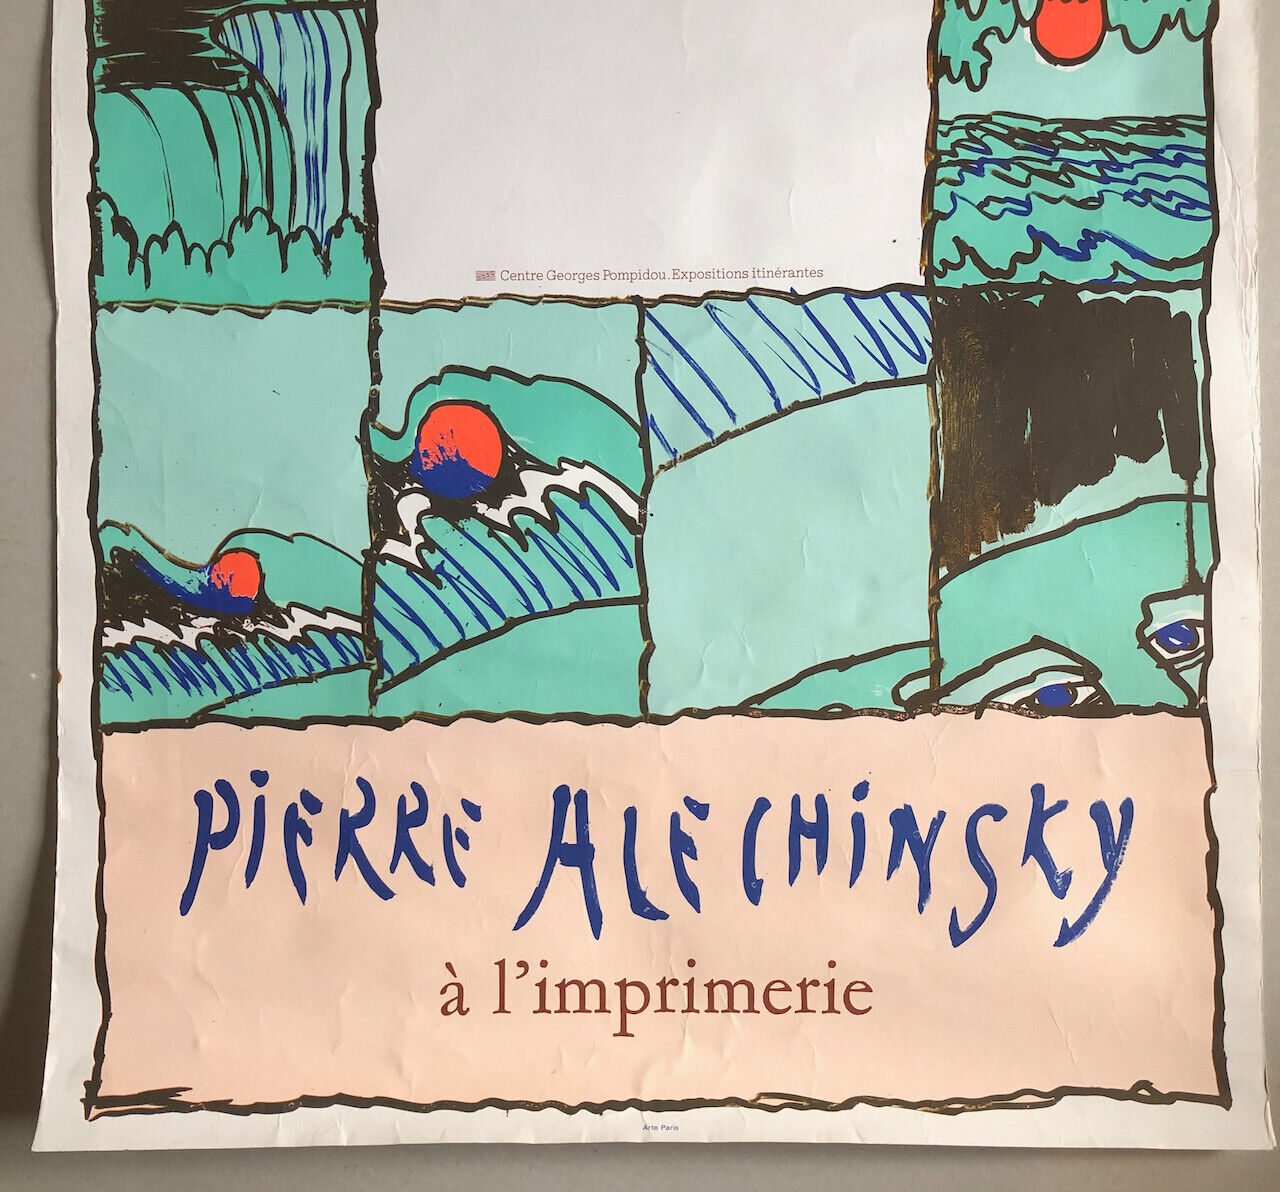 Pierre Alechinsky À l' Imprimerie — affiche lithographique — exposition Pompidou